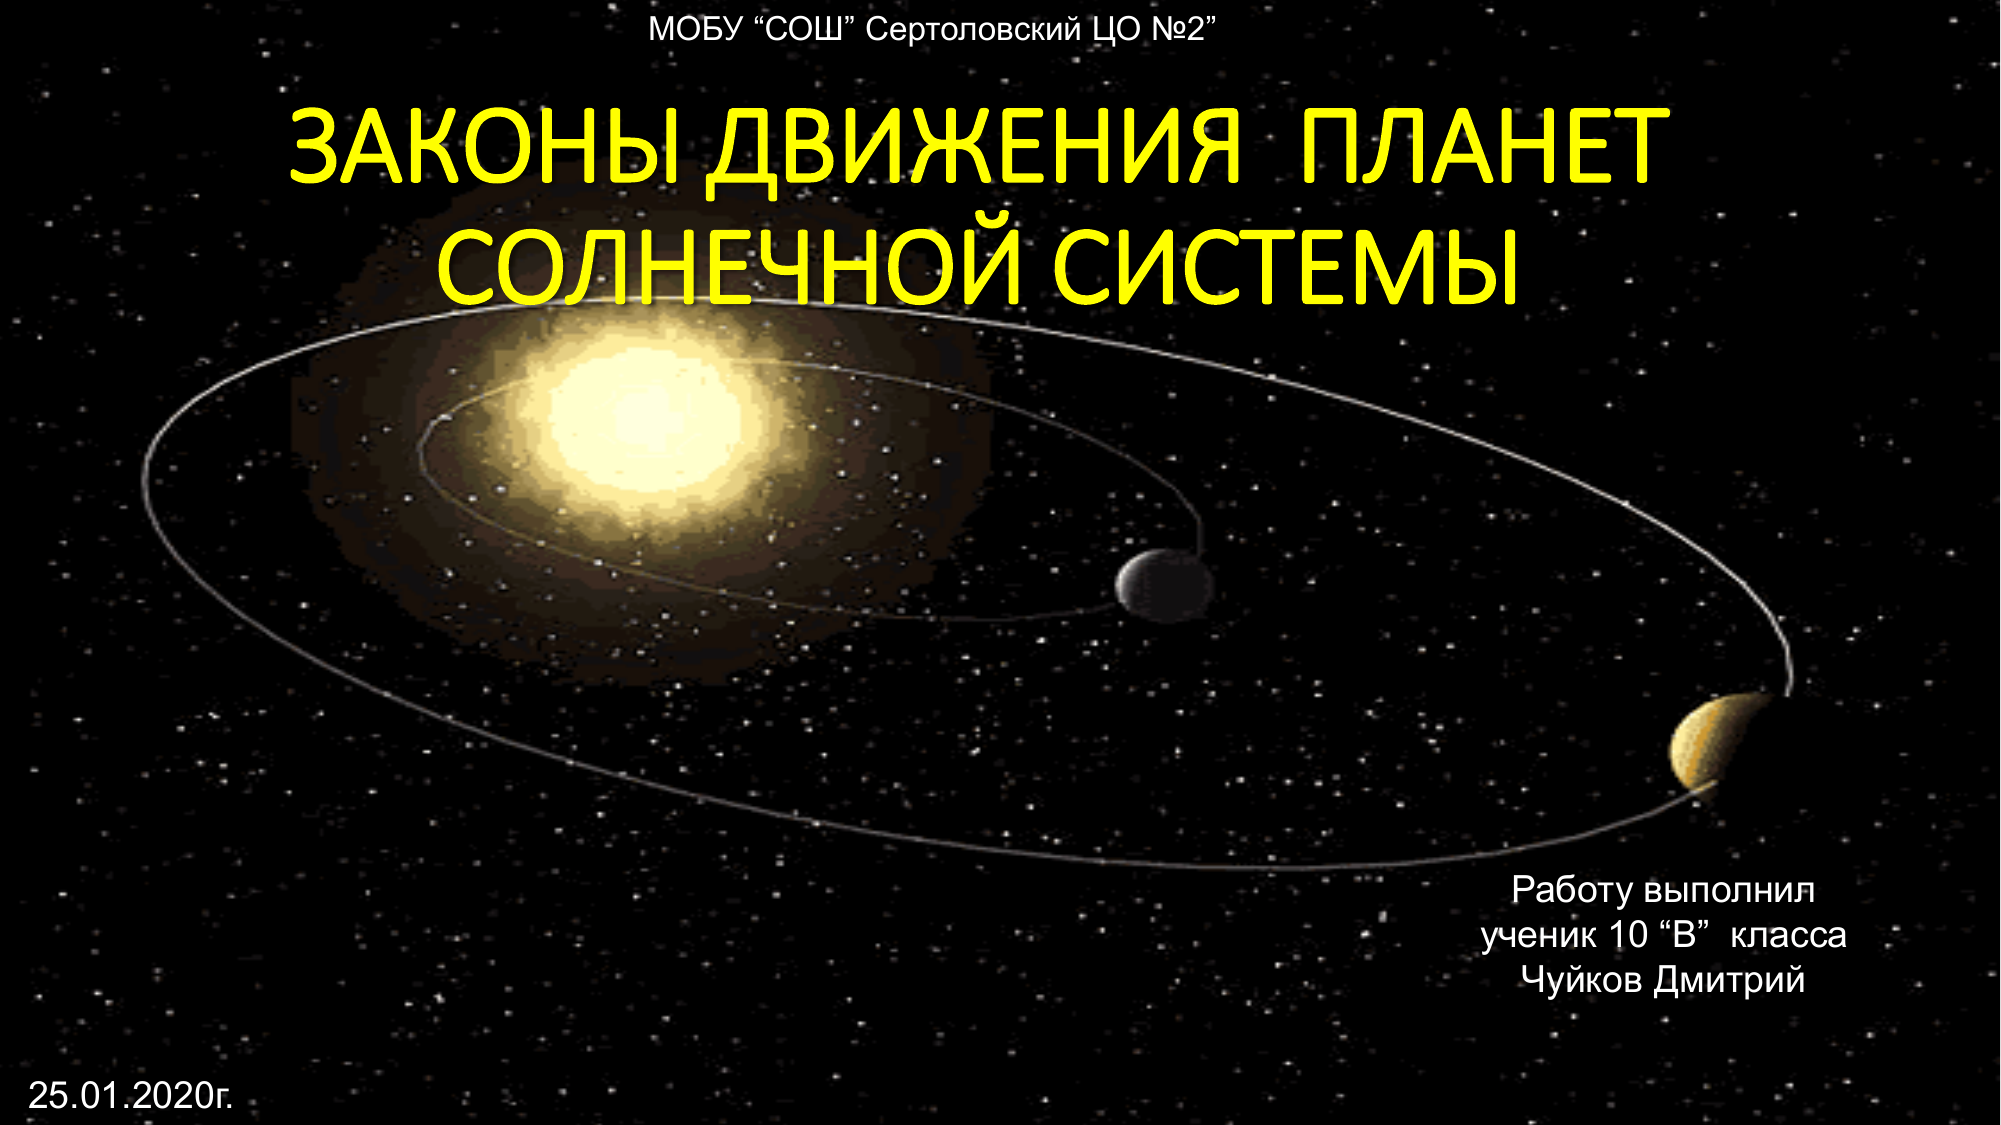 Сколько планета движется. Движение планет. Проверочная движение планет солнечной системы. 3 Закона движения планет вокруг солнца.